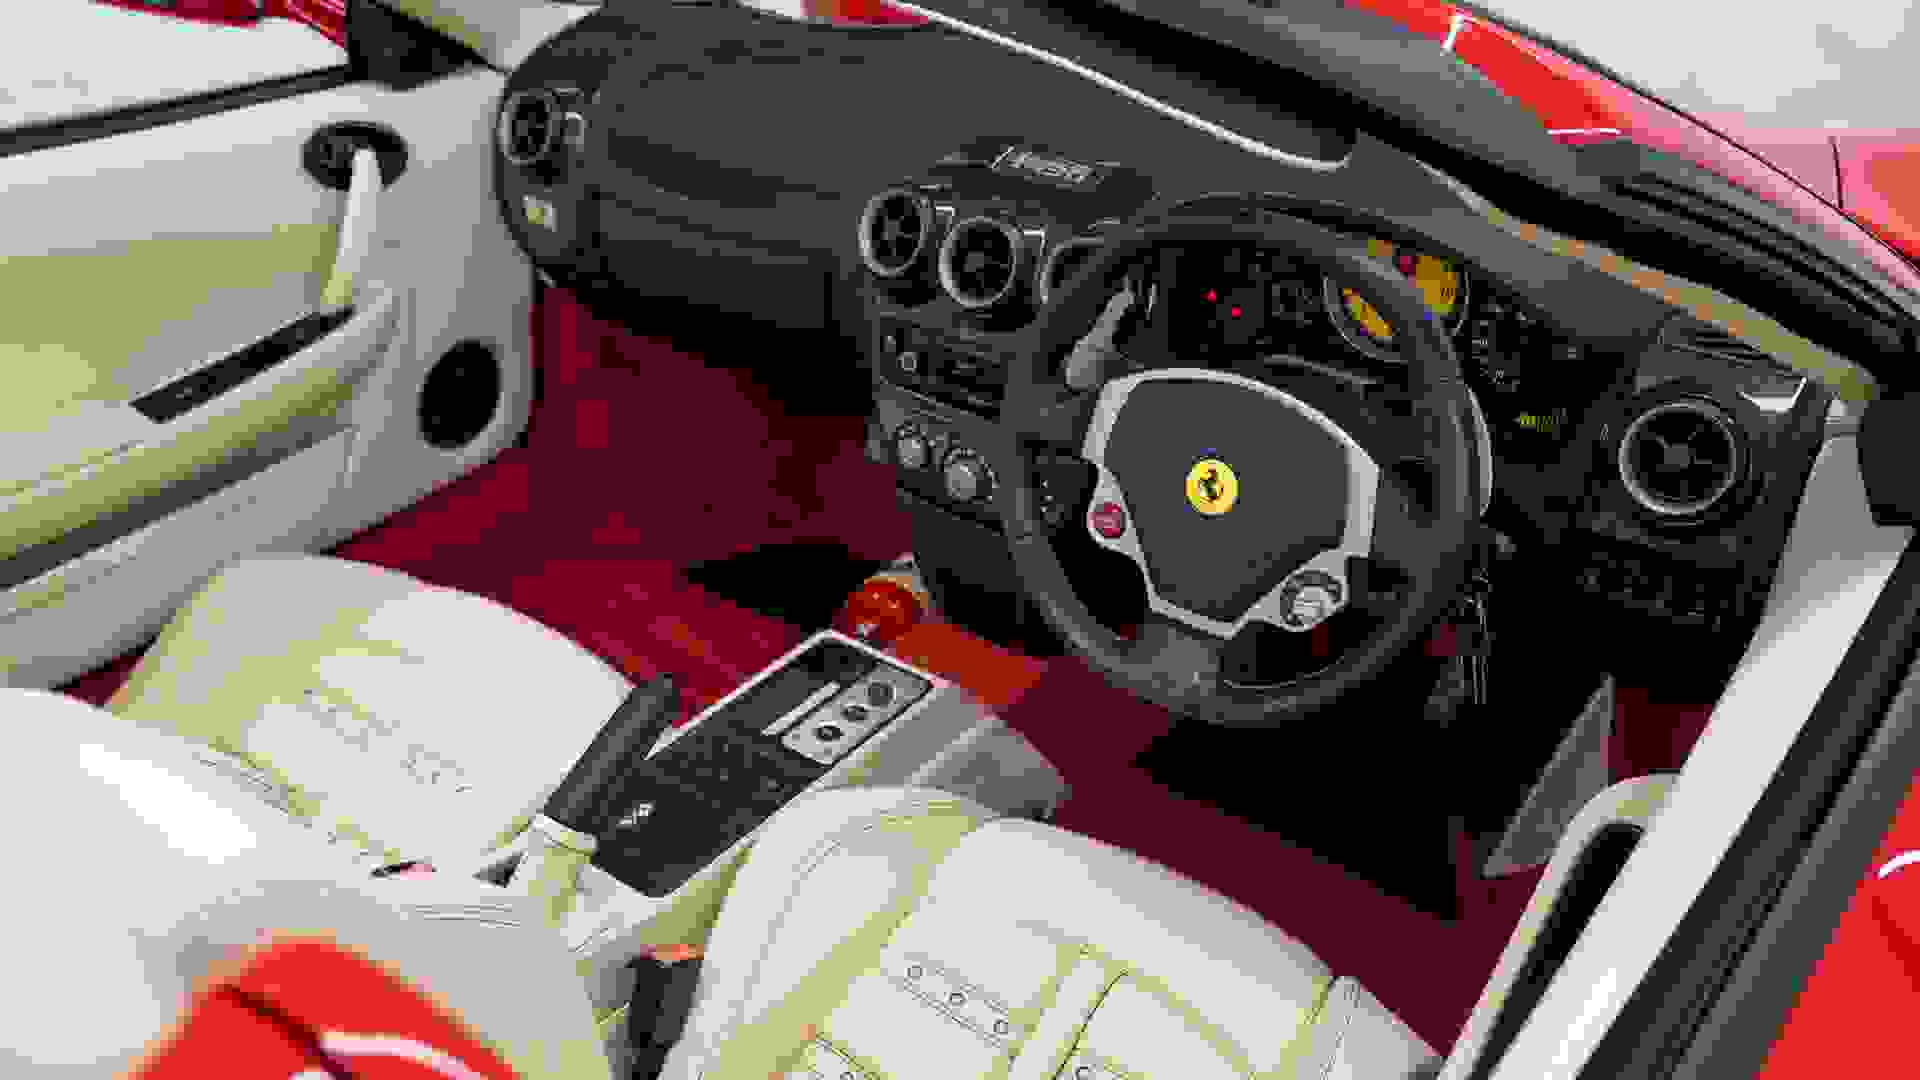 Ferrari F430 Photo 8be1ec41-a8bb-4946-a3d9-77da1e7bb144.jpg